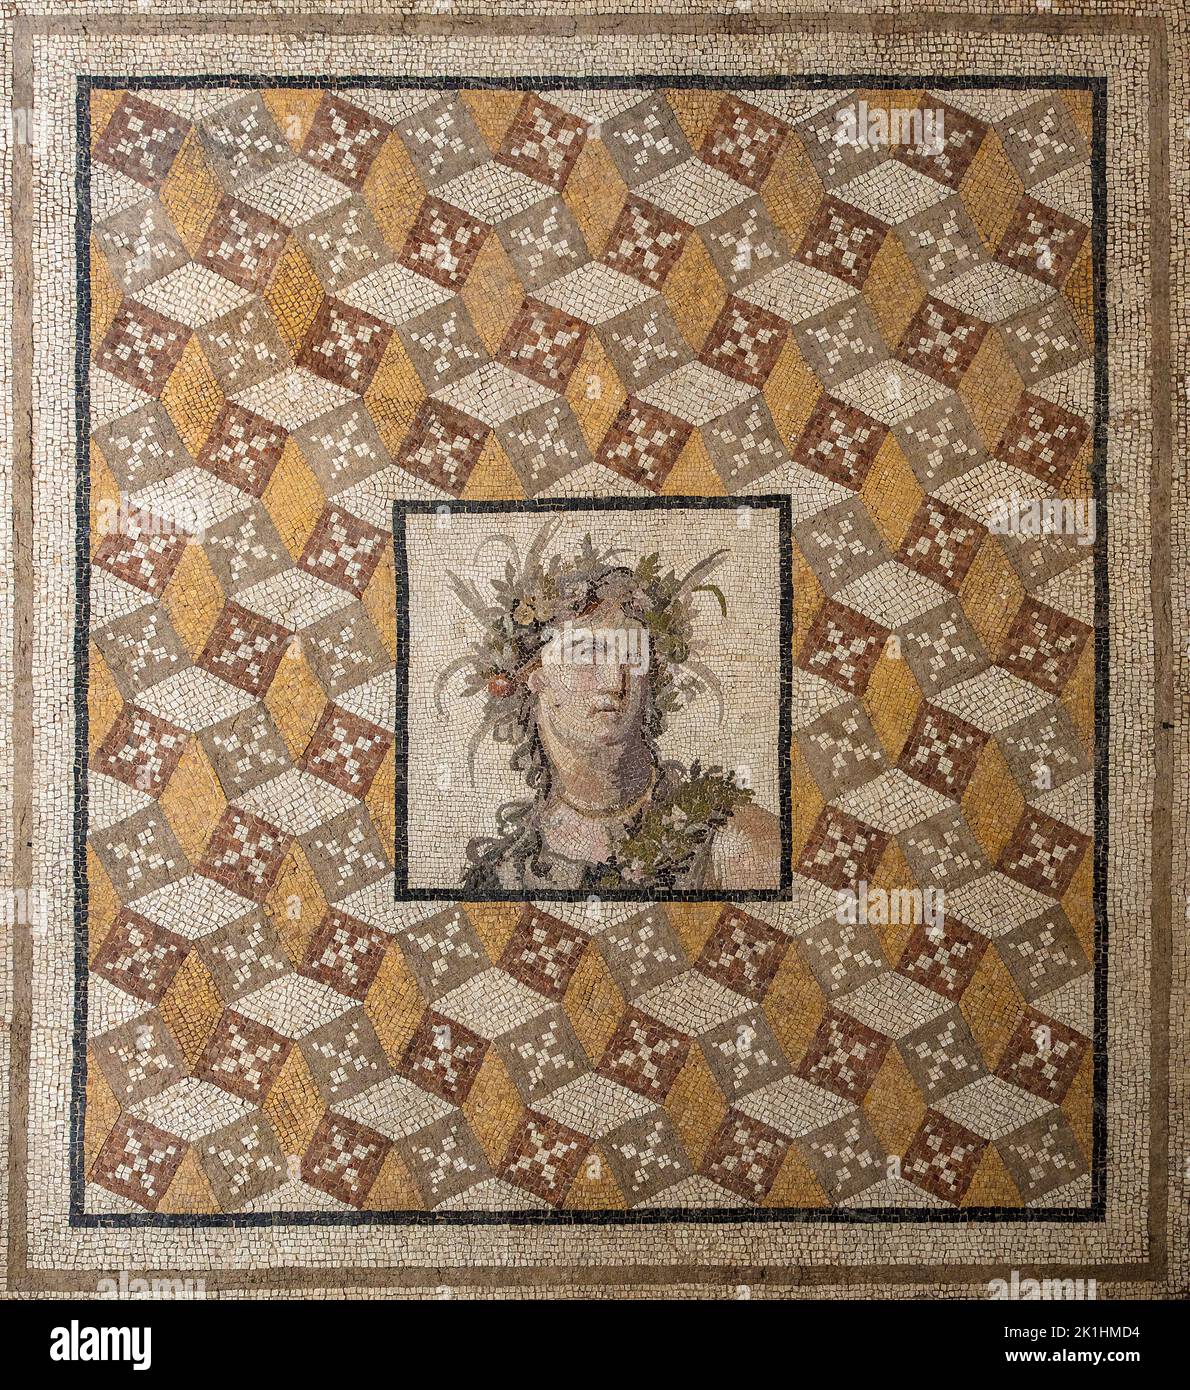 Ancien plancher de la mosaïque romaine de Daphne près d'Anitoch (Antakya moderne, Turquie) dans le Metropolitan Museum of Art (MET) NYC, Etats-Unis Banque D'Images